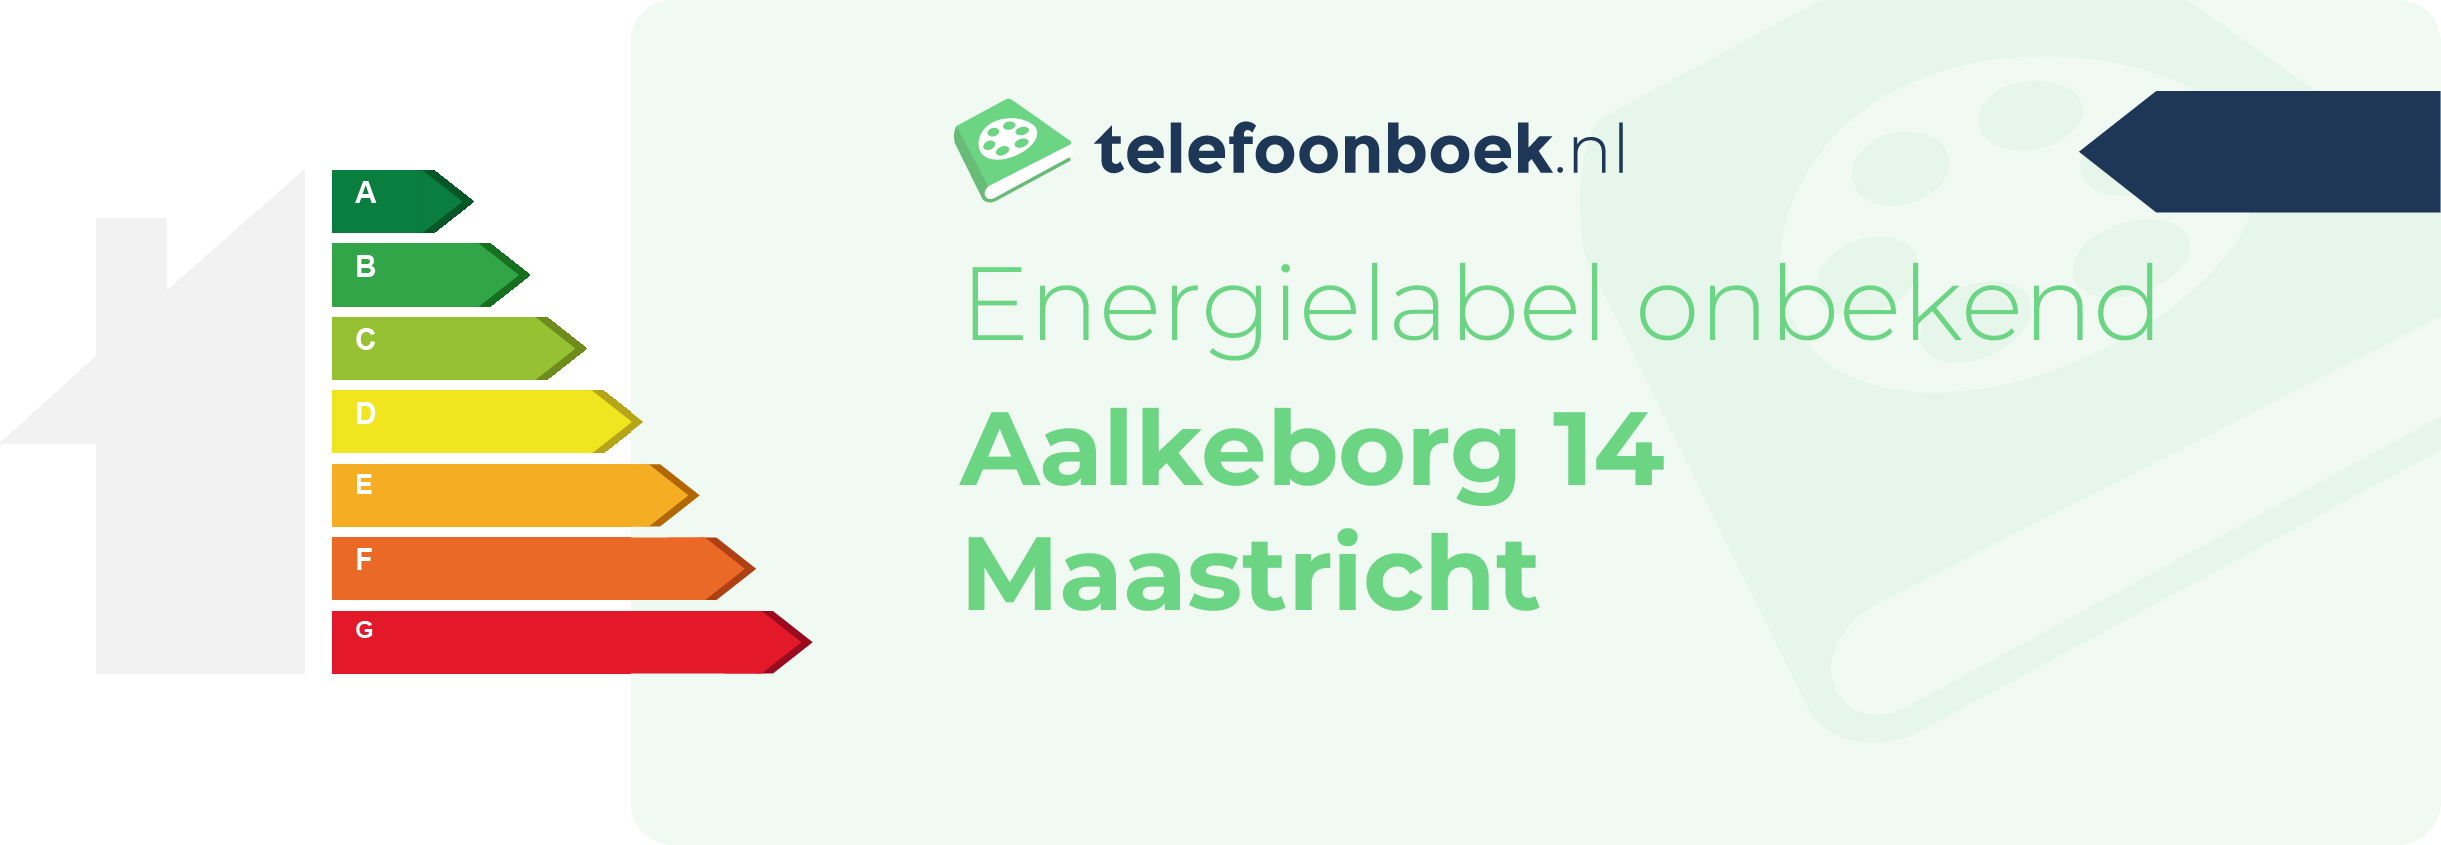 Energielabel Aalkeborg 14 Maastricht